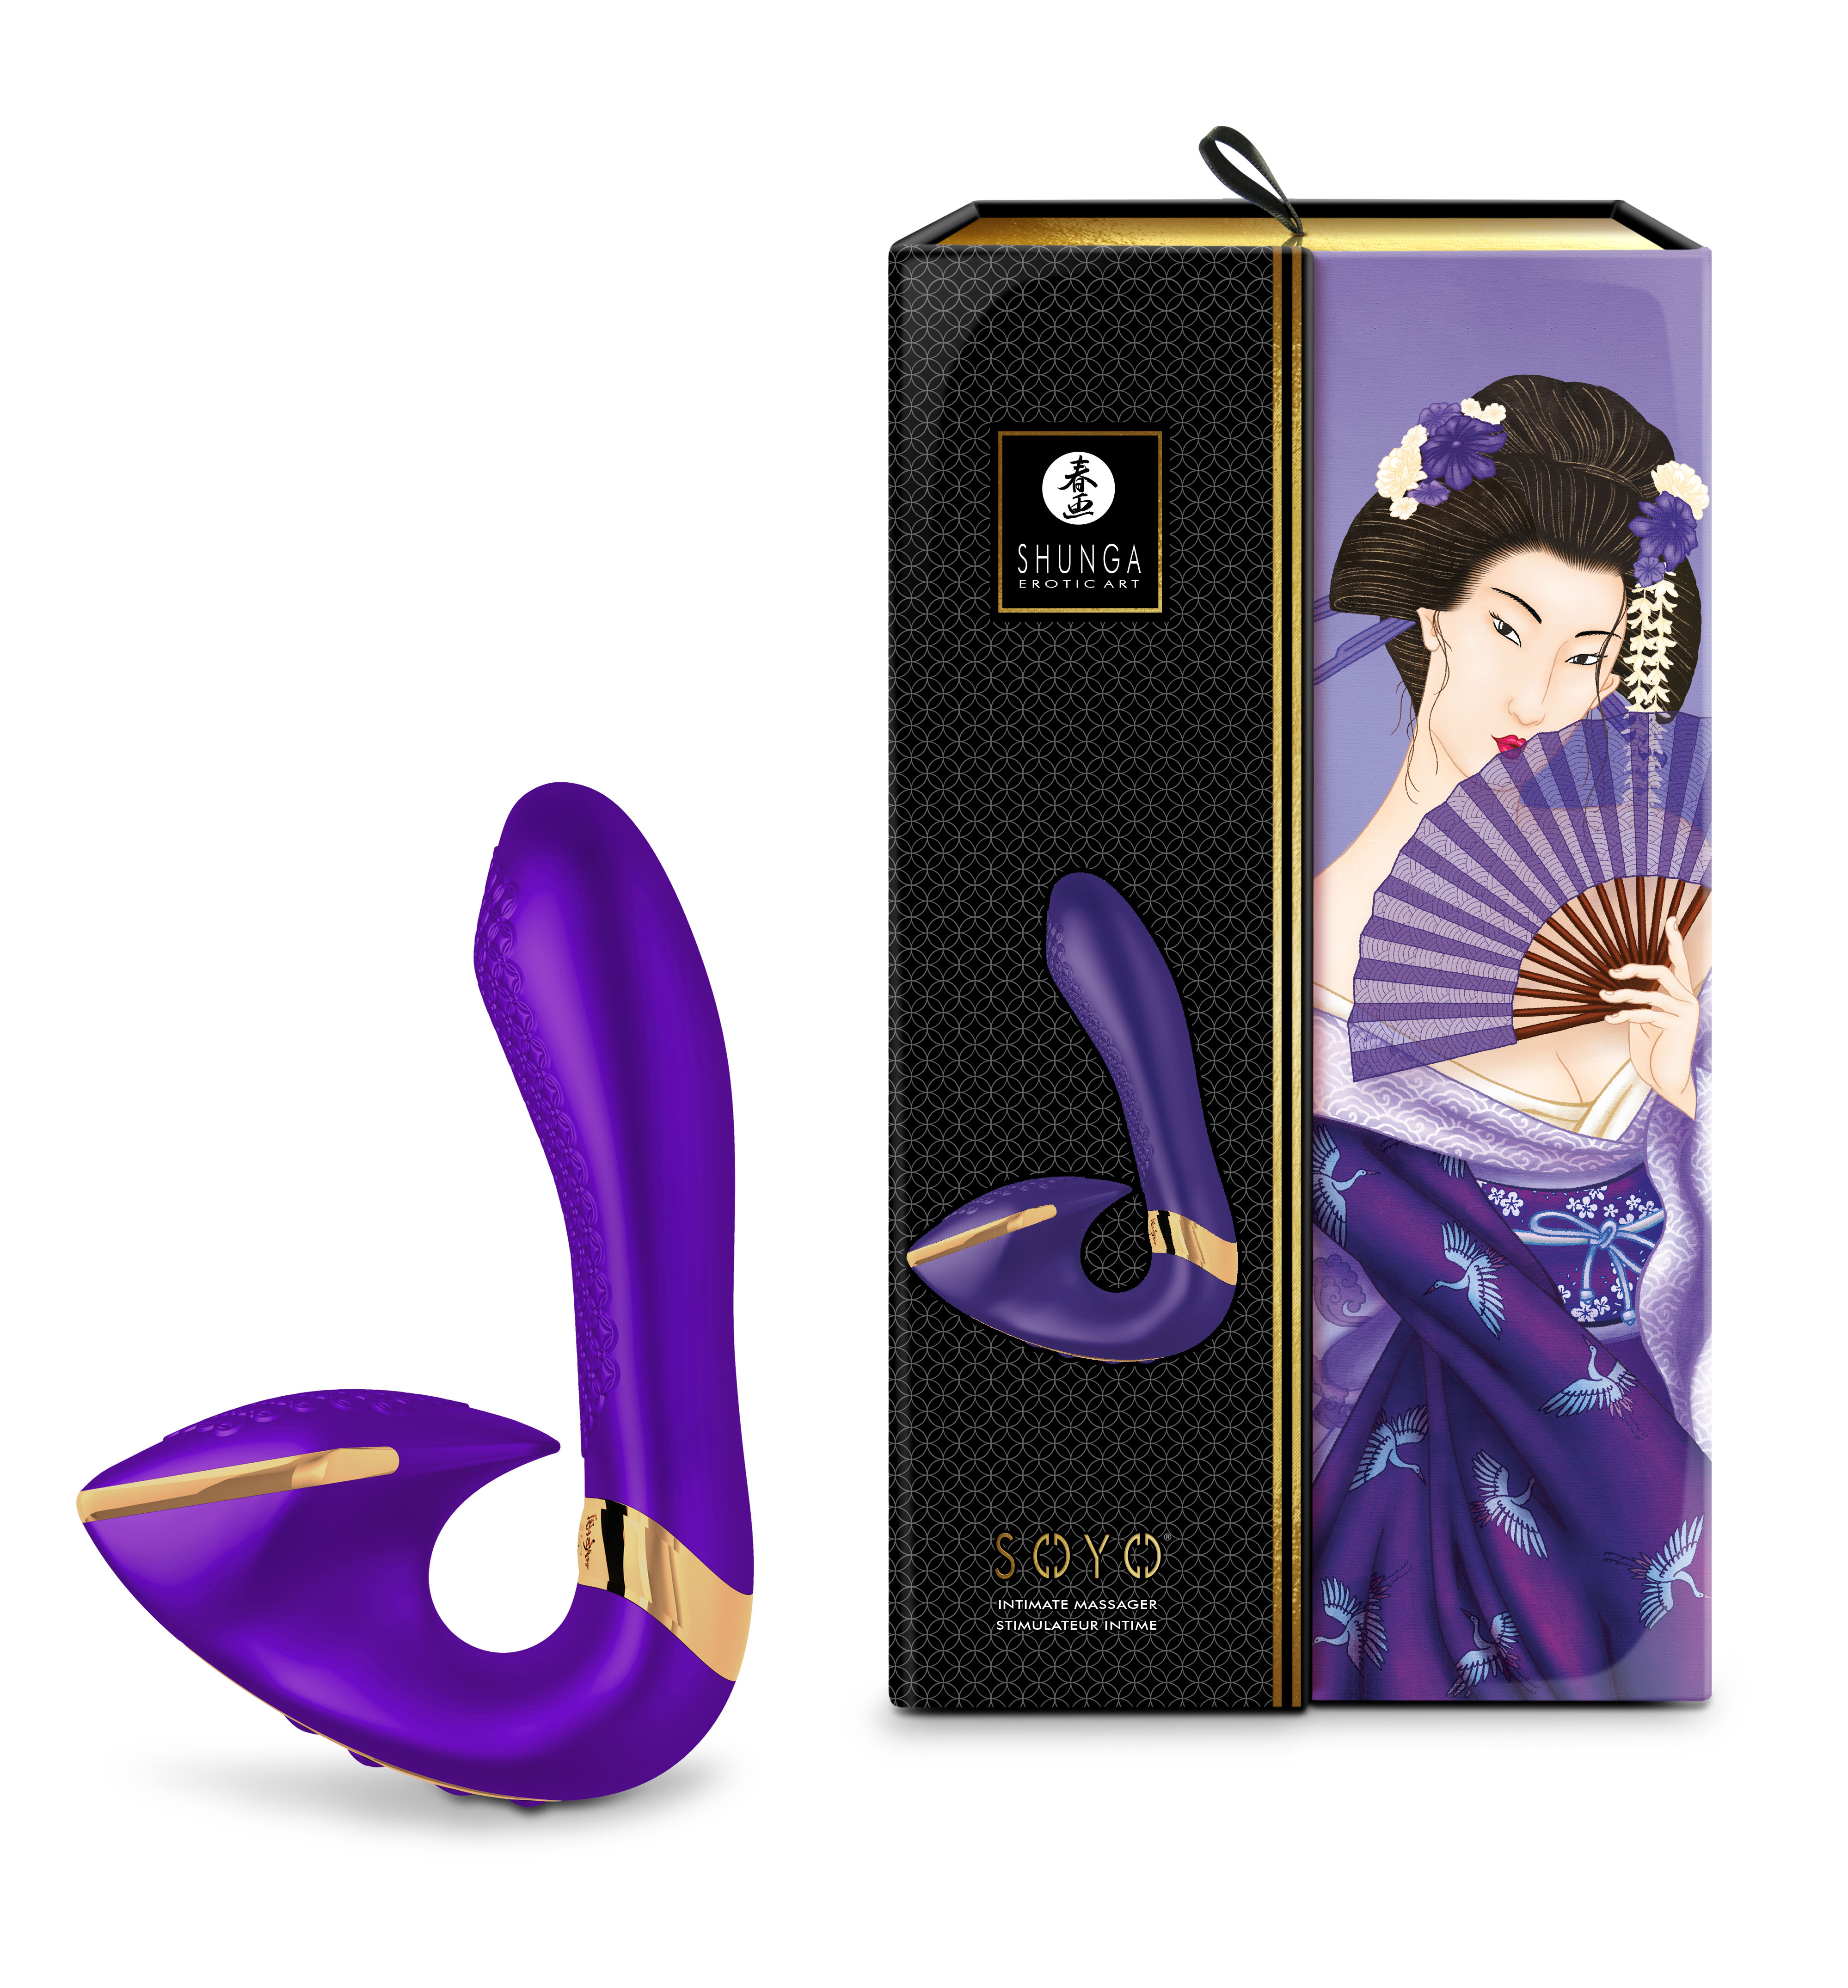 Shunga - SOYO - Intimate massager purple